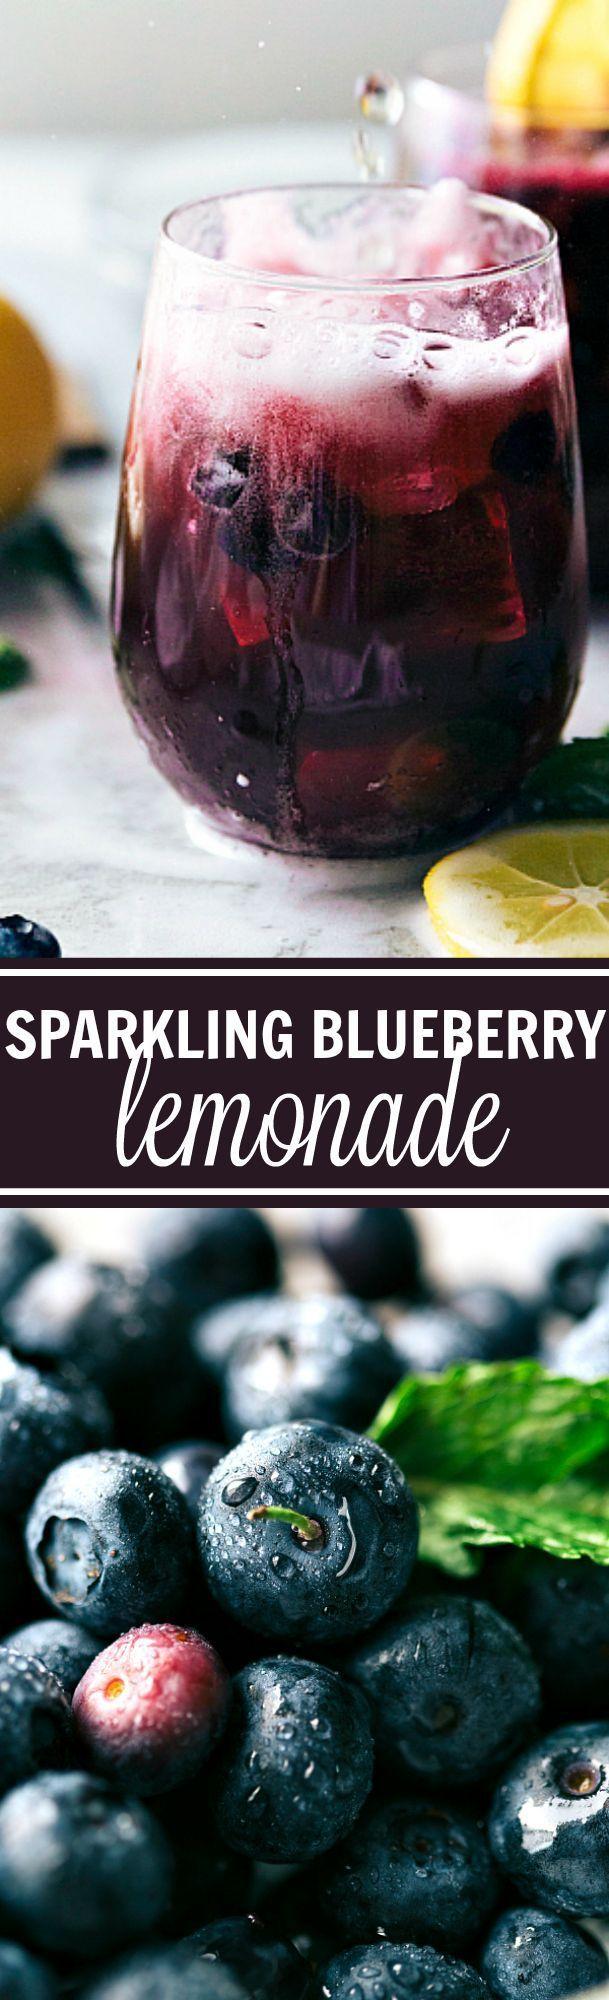 Wedding - Easy Sparkling Blueberry Lemonade